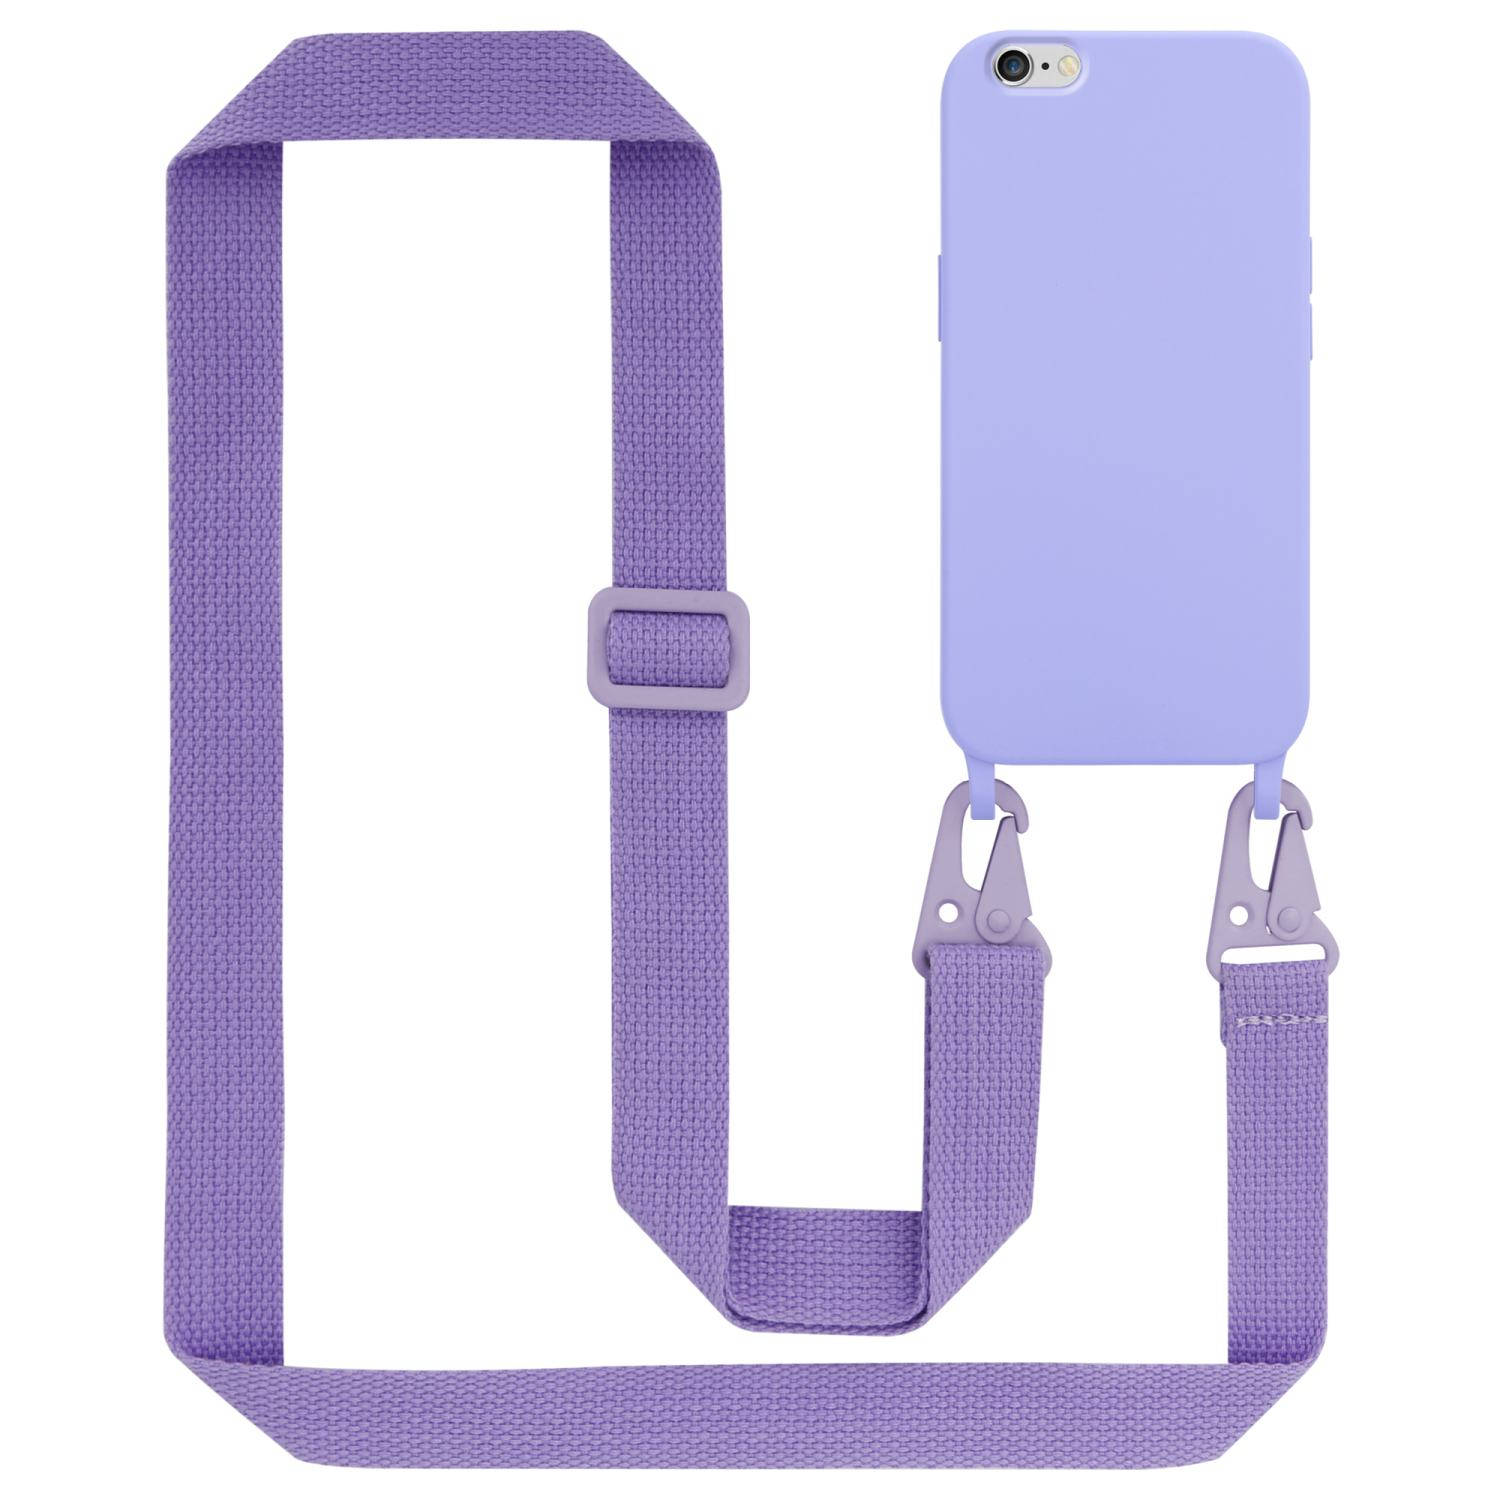 Cadorabo Mobiele telefoon ketting voor Apple iPhone 6 / 6S in LIQUID LICHT PAARS - Silicone beschermhoes met lengte verstelbare koord riem